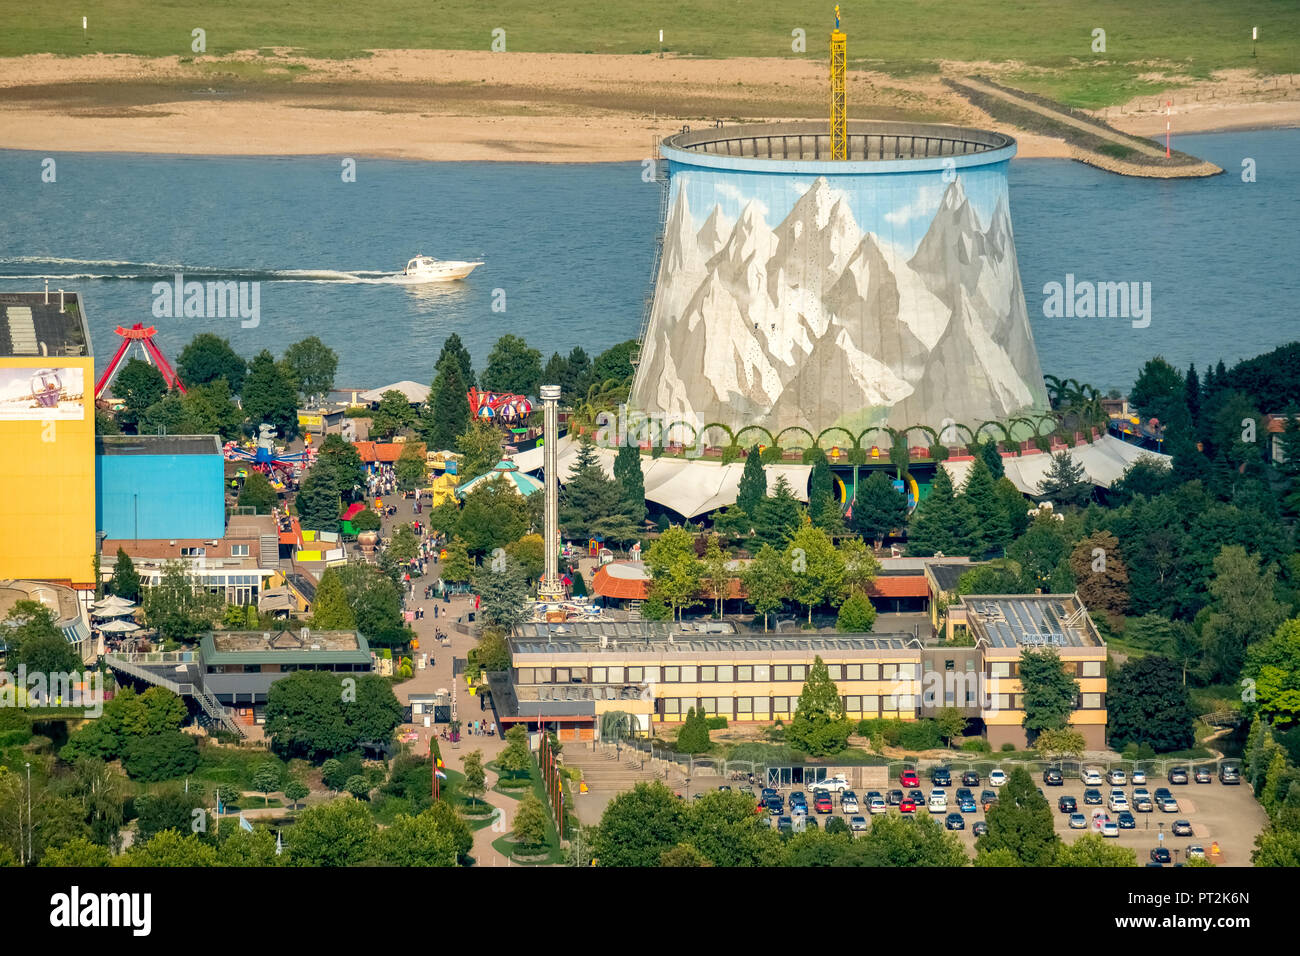 Miniatur Wunderland Kalkar, amusement park, ancienne centrale électrique nucléaire Kalkar au Rhin, peint tour de refroidissement, à Kalkar Rhin, Kalkar, Bas-rhin, Rhin, Rhénanie du Nord-Westphalie, Allemagne Banque D'Images